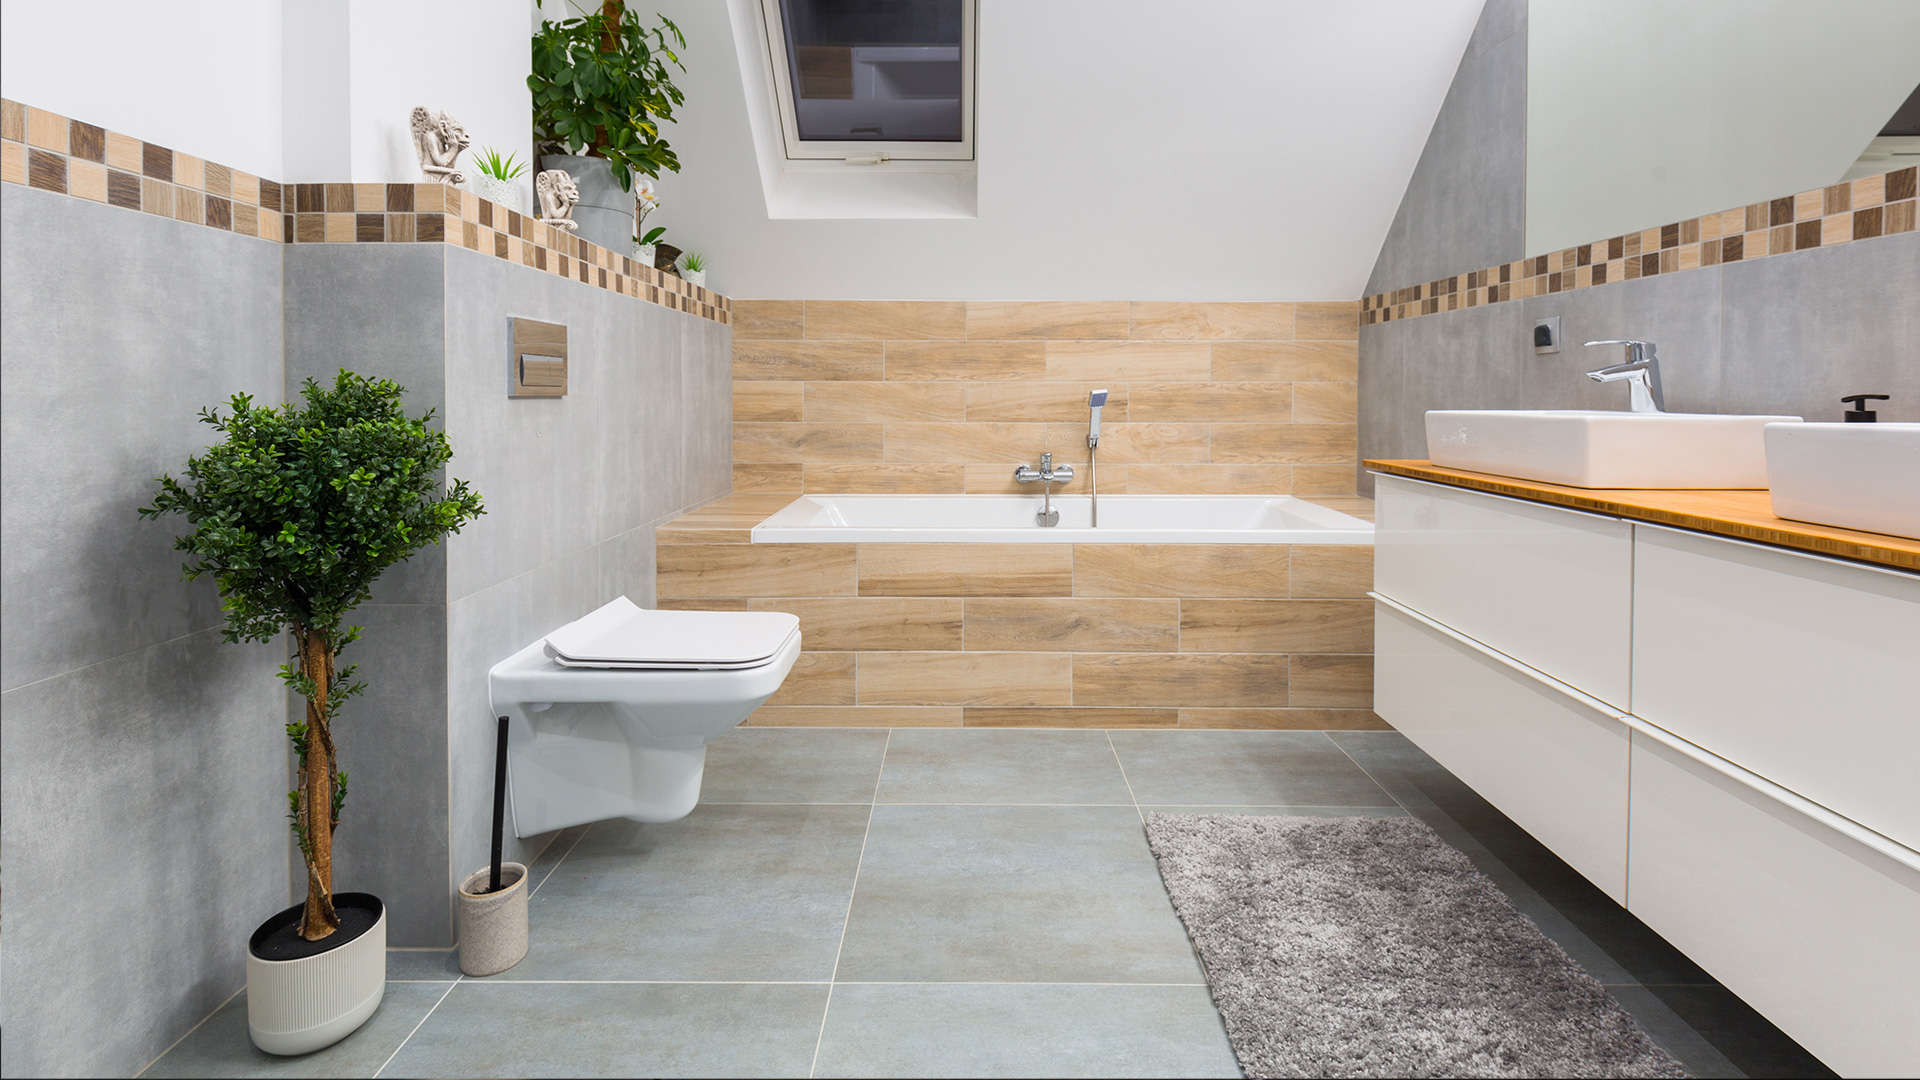 łazienka wyłożona płytkami: szarymi oraz imitującymi drewno -  w 2022